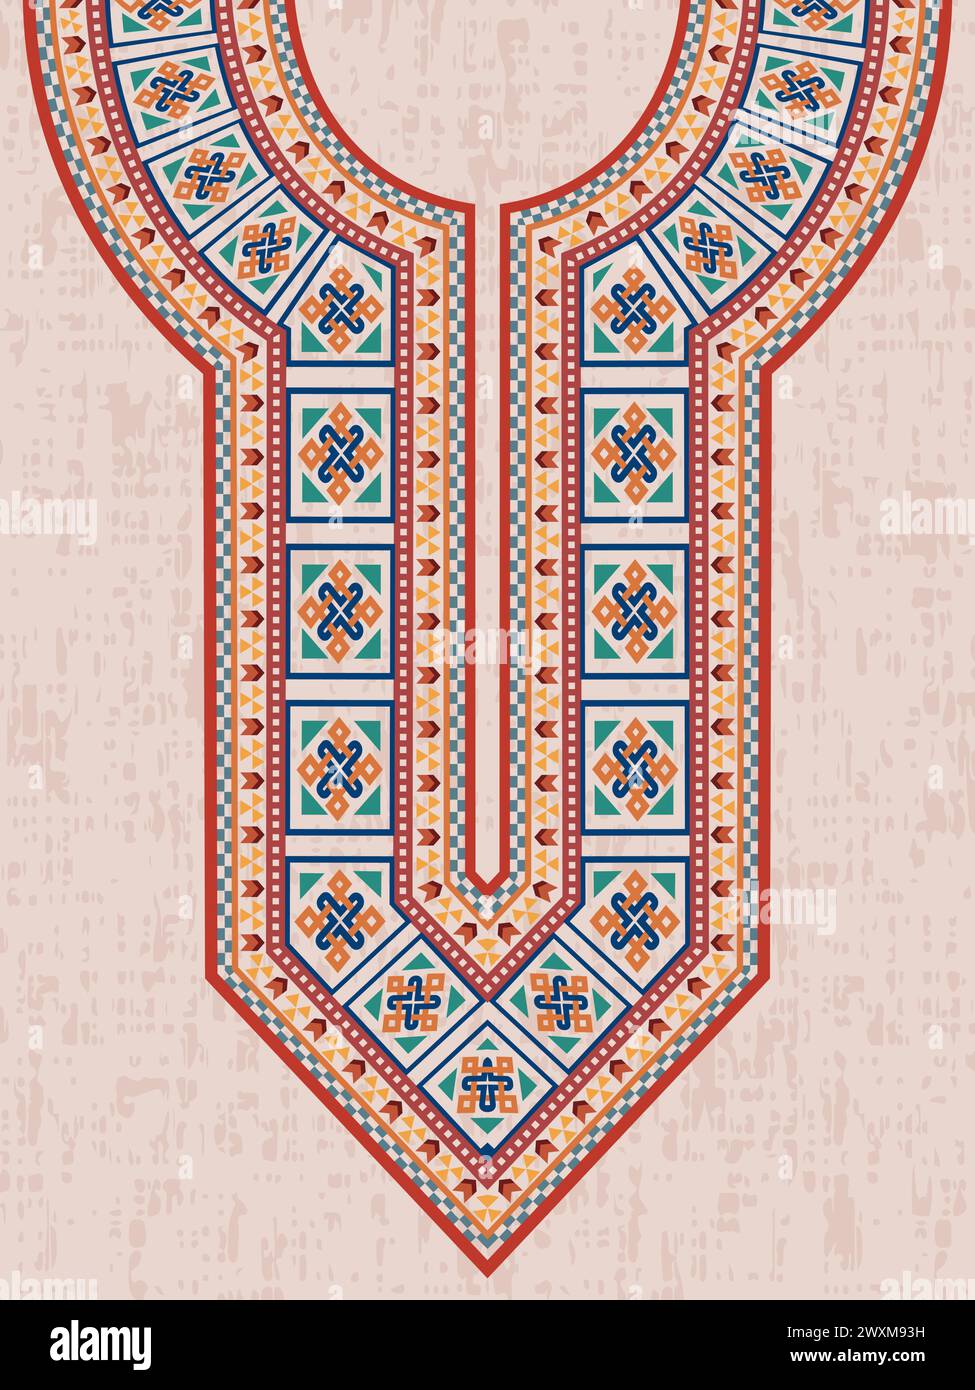 Dekoratives Design mit Nackenstickerei für den indischen Kurta mit keltischen Interlaced-Mustern und wiederholten geometrischen Formen in leuchtenden Farben. Stock Vektor